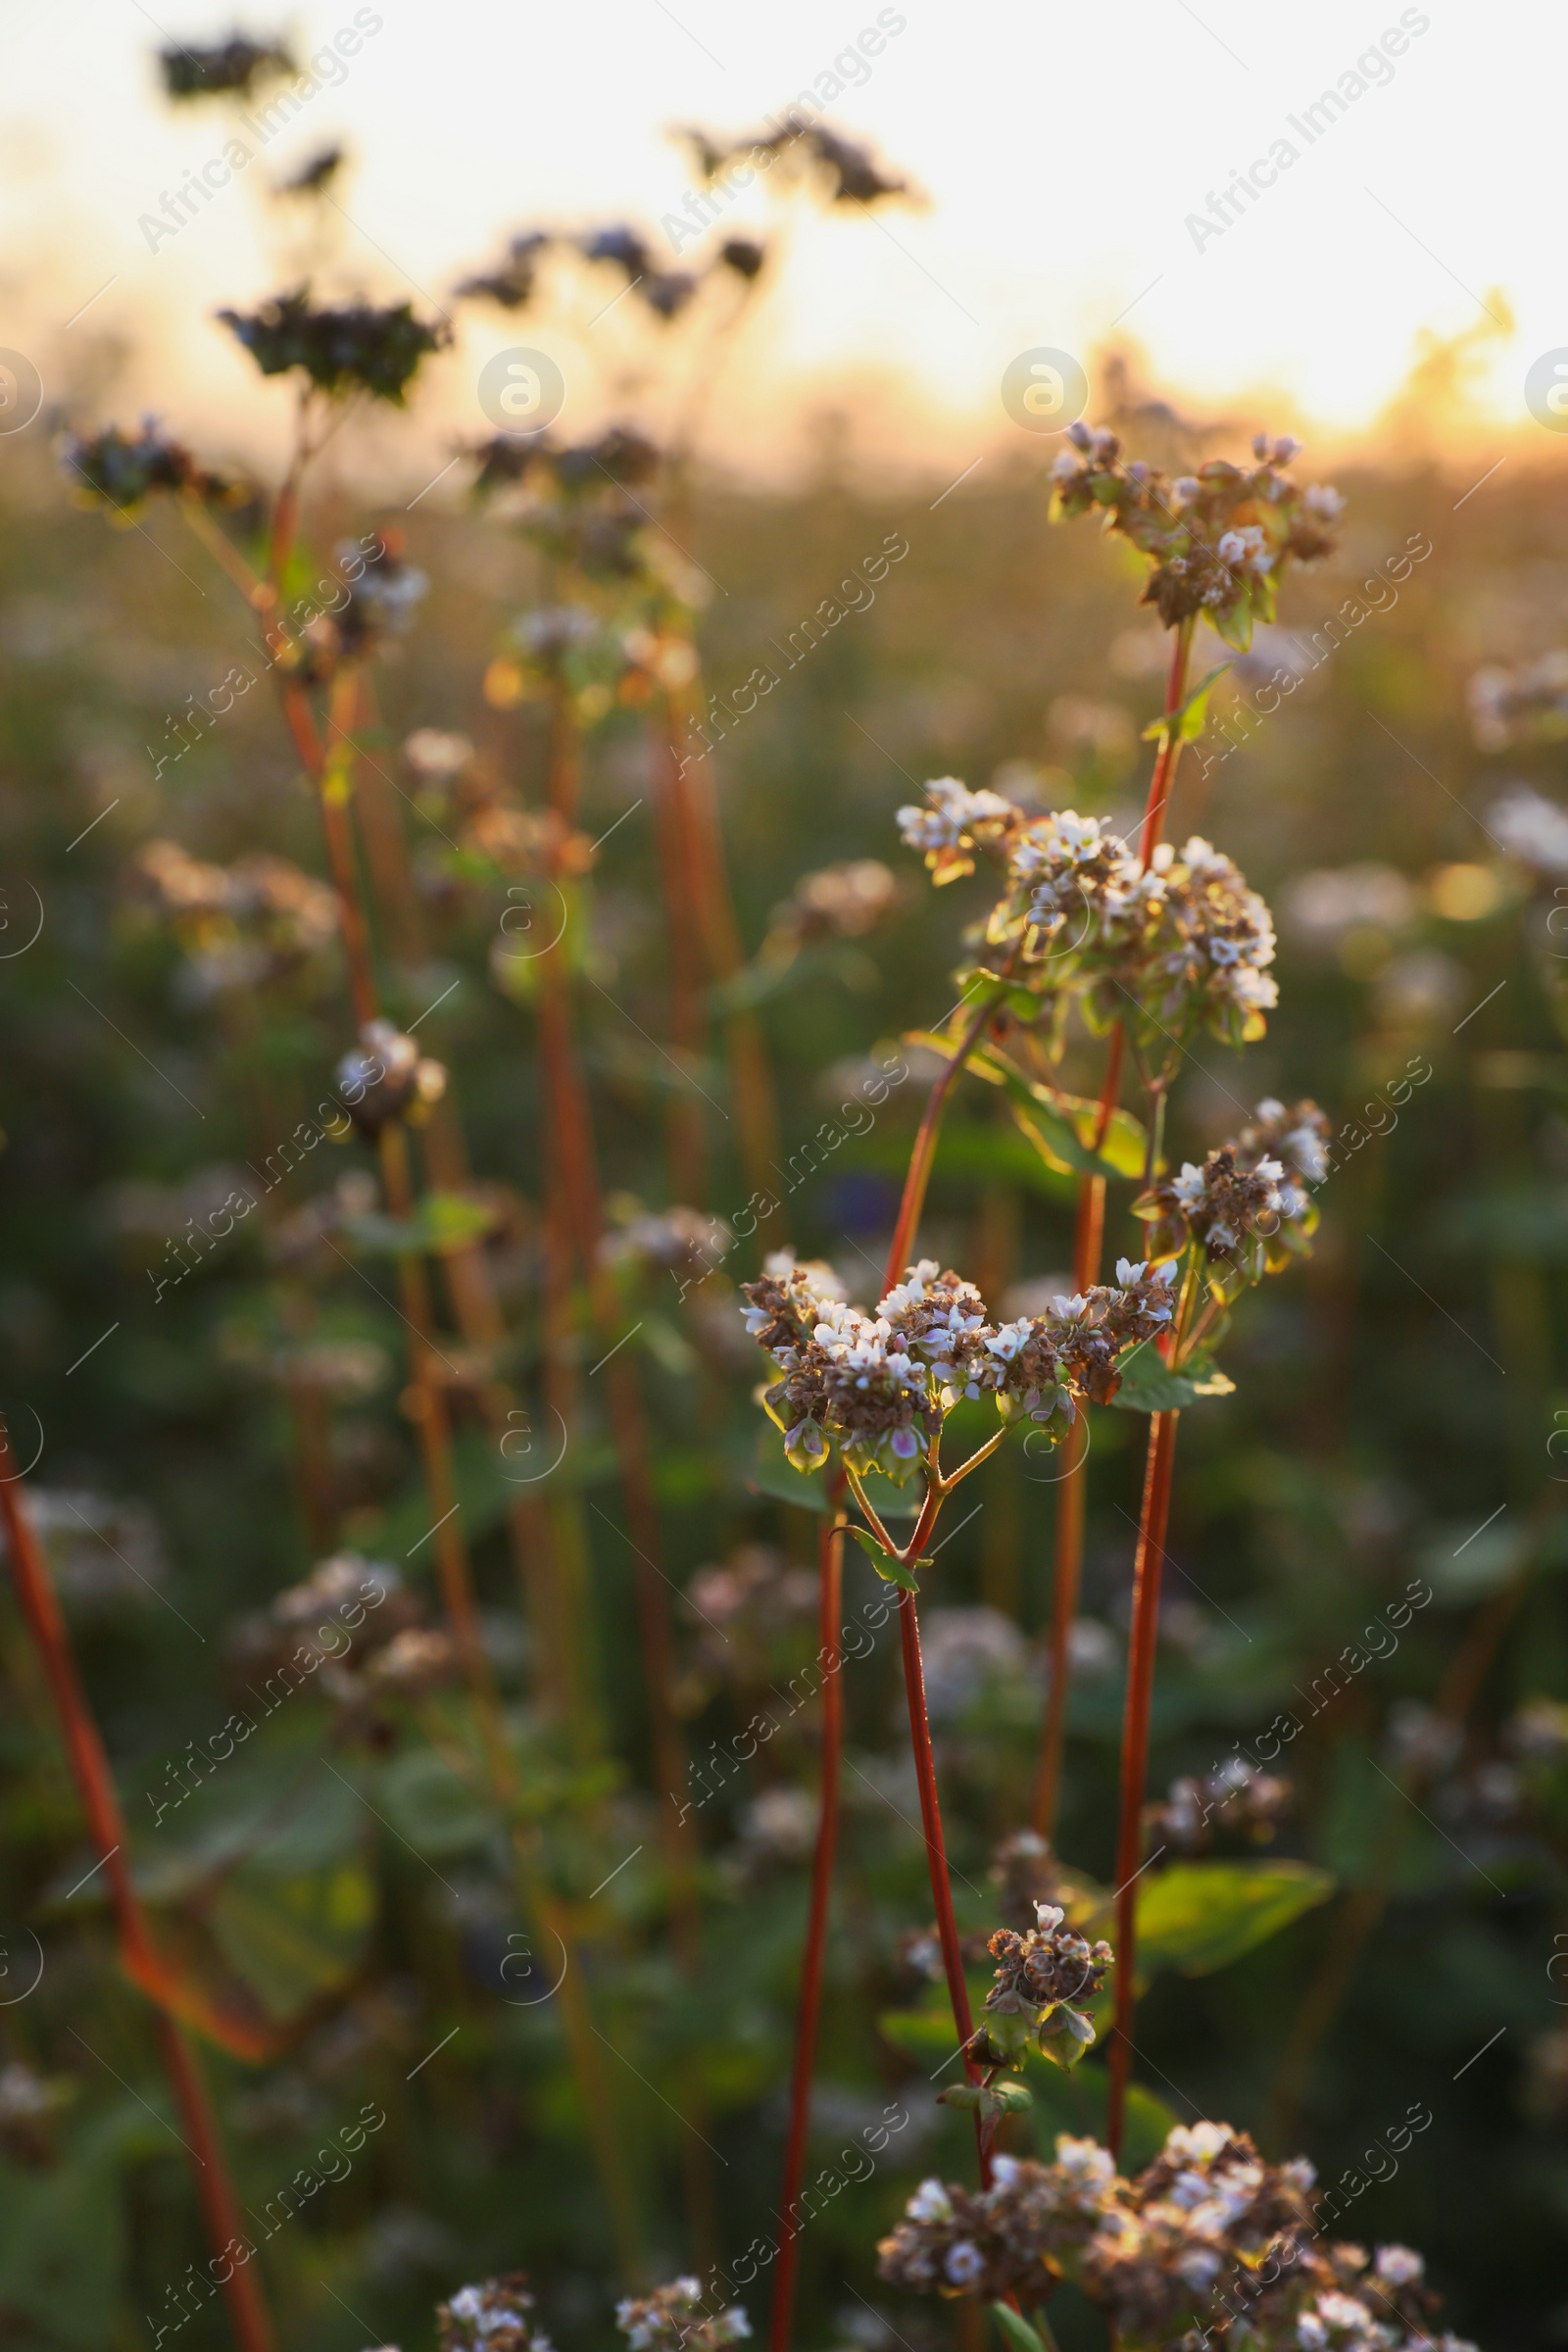 Photo of Many beautiful buckwheat flowers growing in field